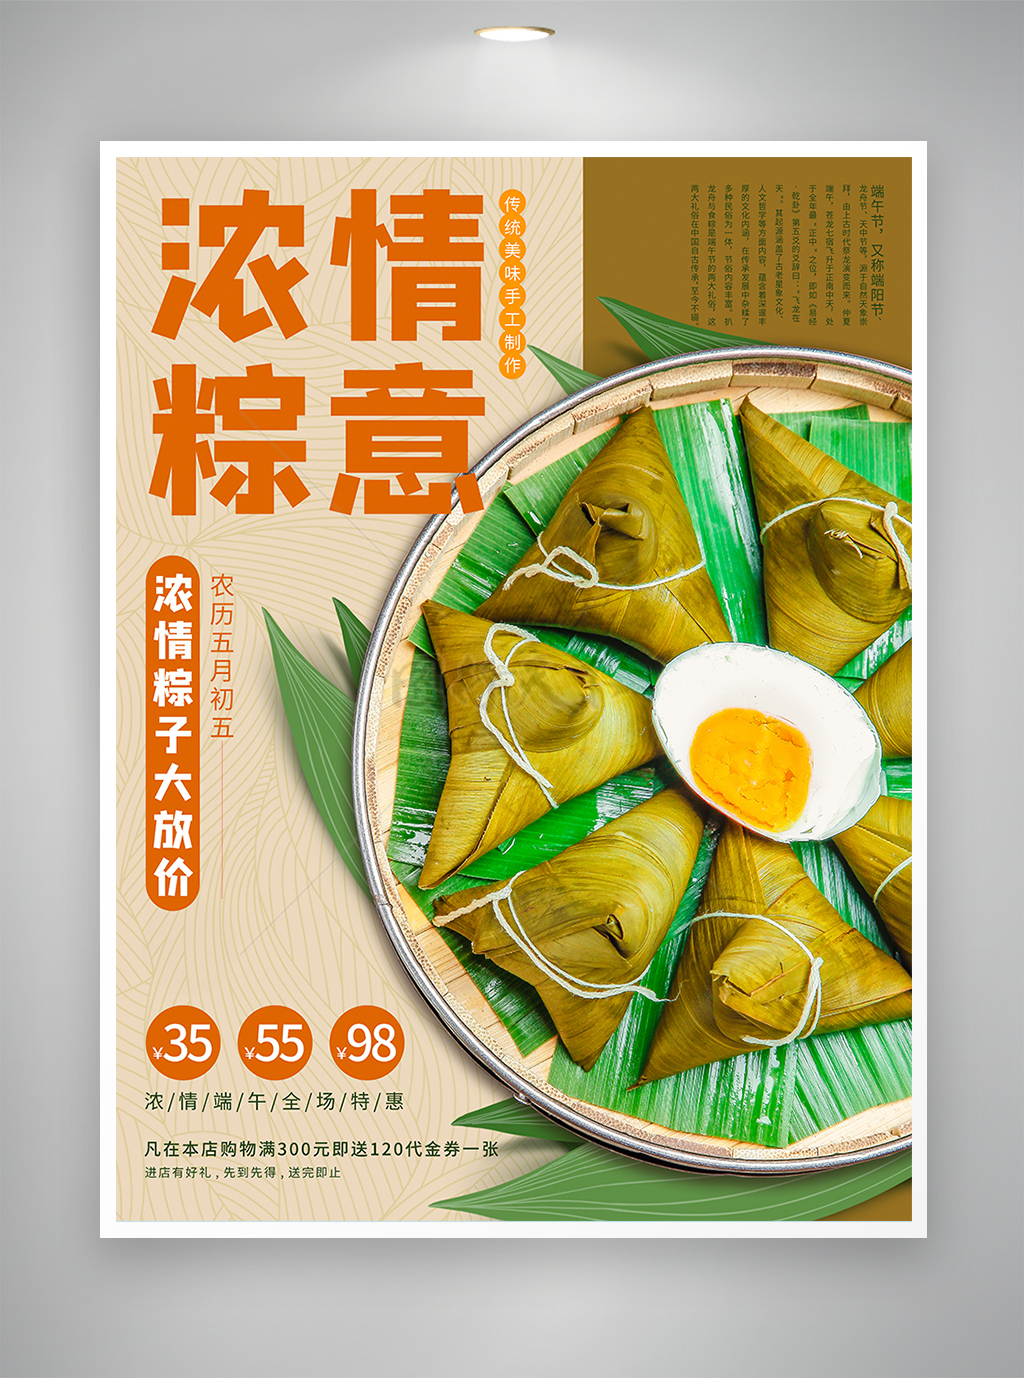 浓情粽意端午节粽子促销宣传海报